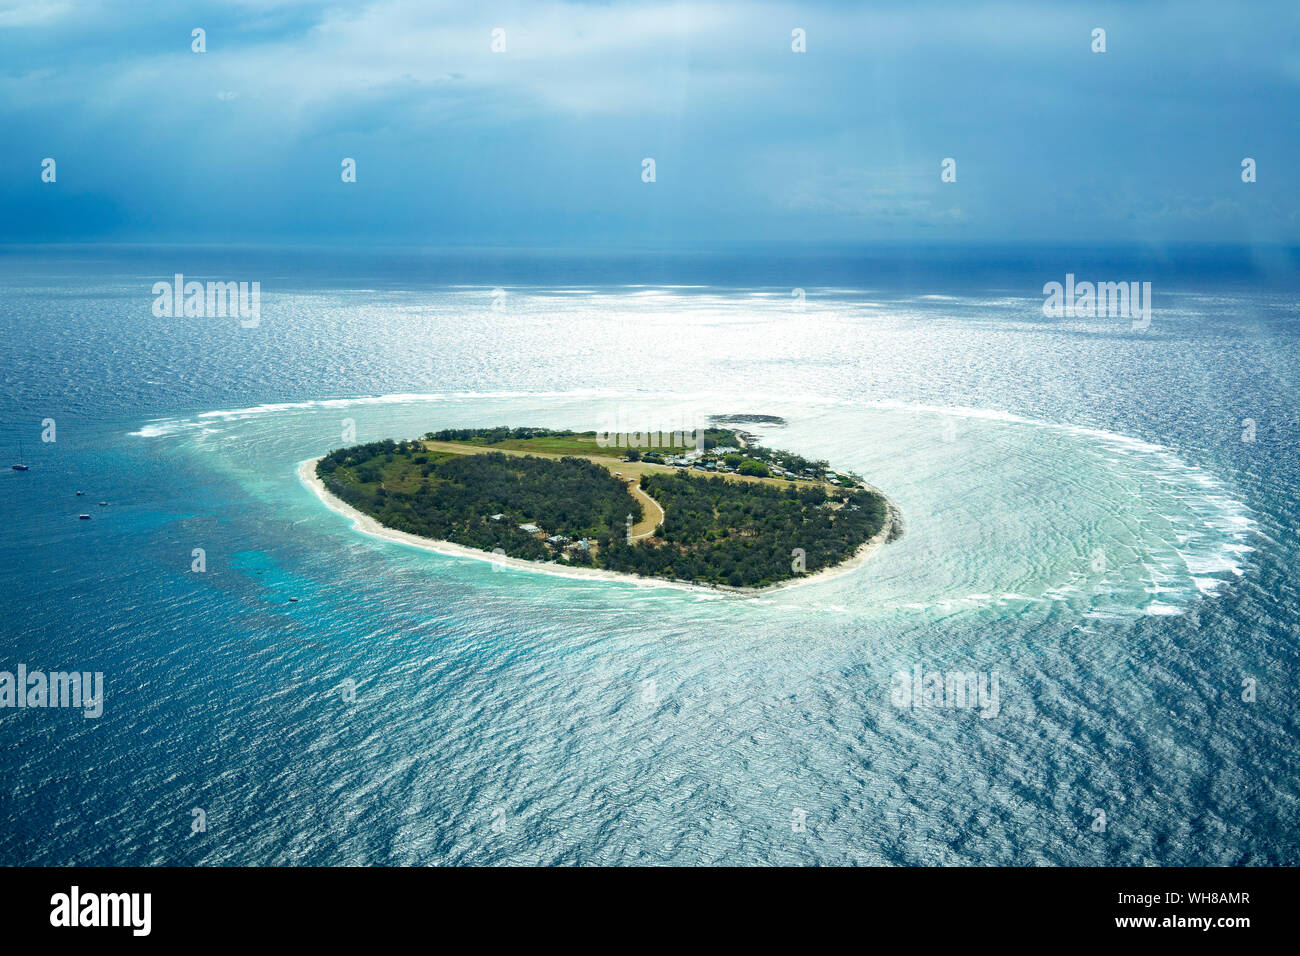 Vista aerea di Lady Elliot Island con Coral Cay, della Grande Barriera Corallina, Australia Foto Stock